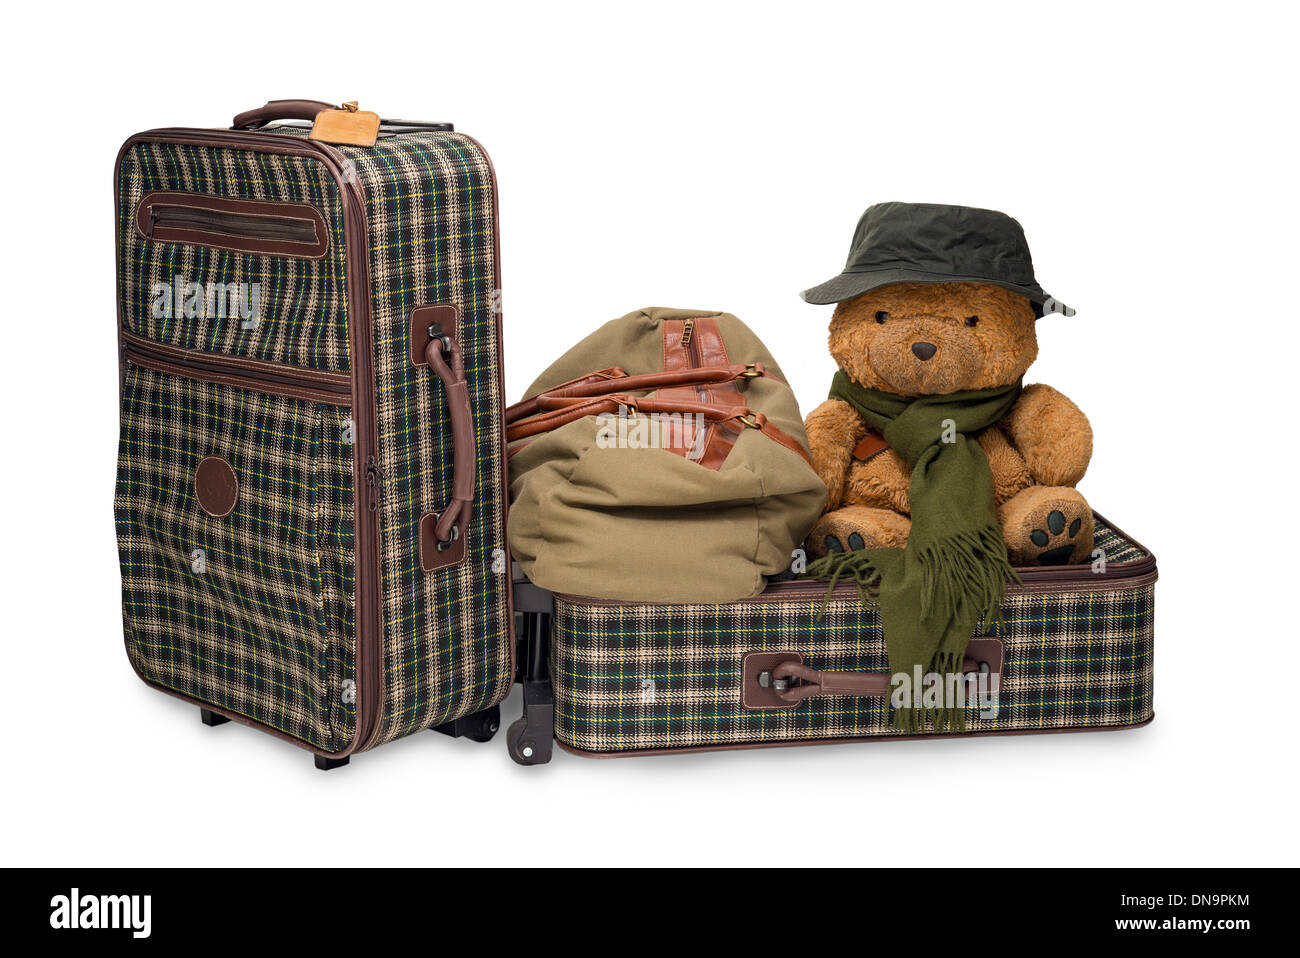 Deux valises, un sac et un ours avec un chapeau. Isolé Banque D'Images